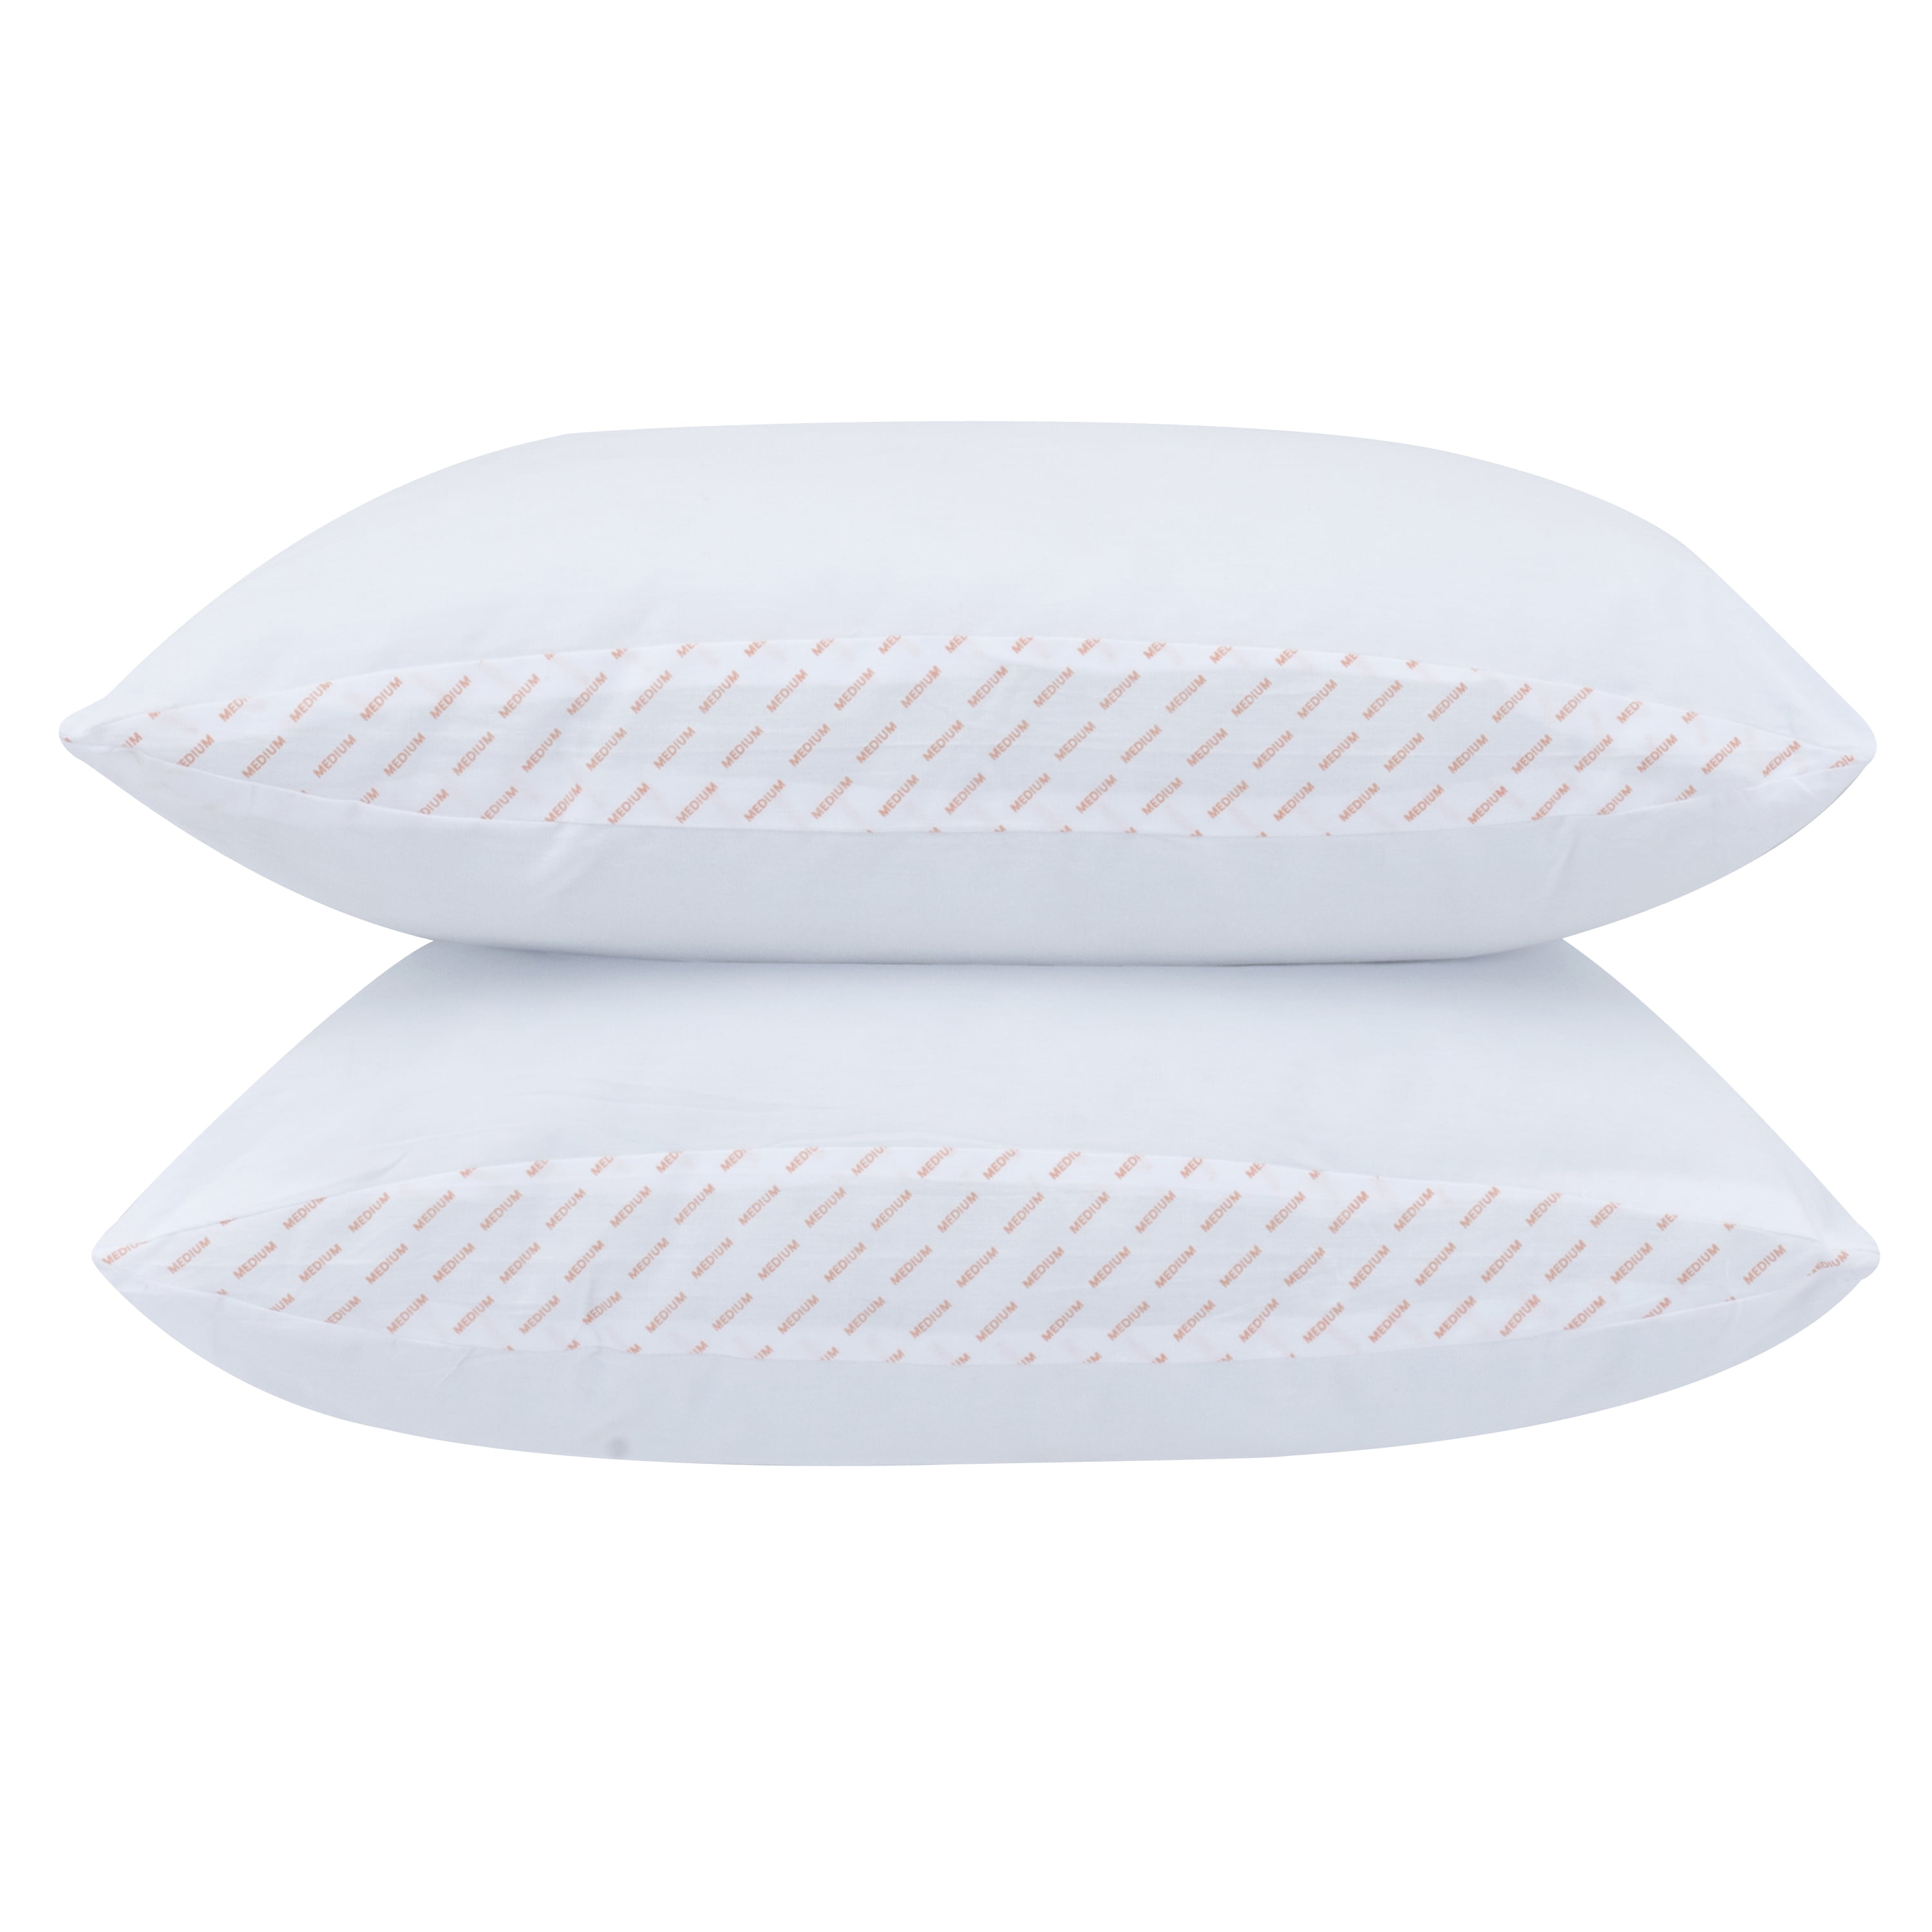 beyond down gel fiber side sleeper pillow